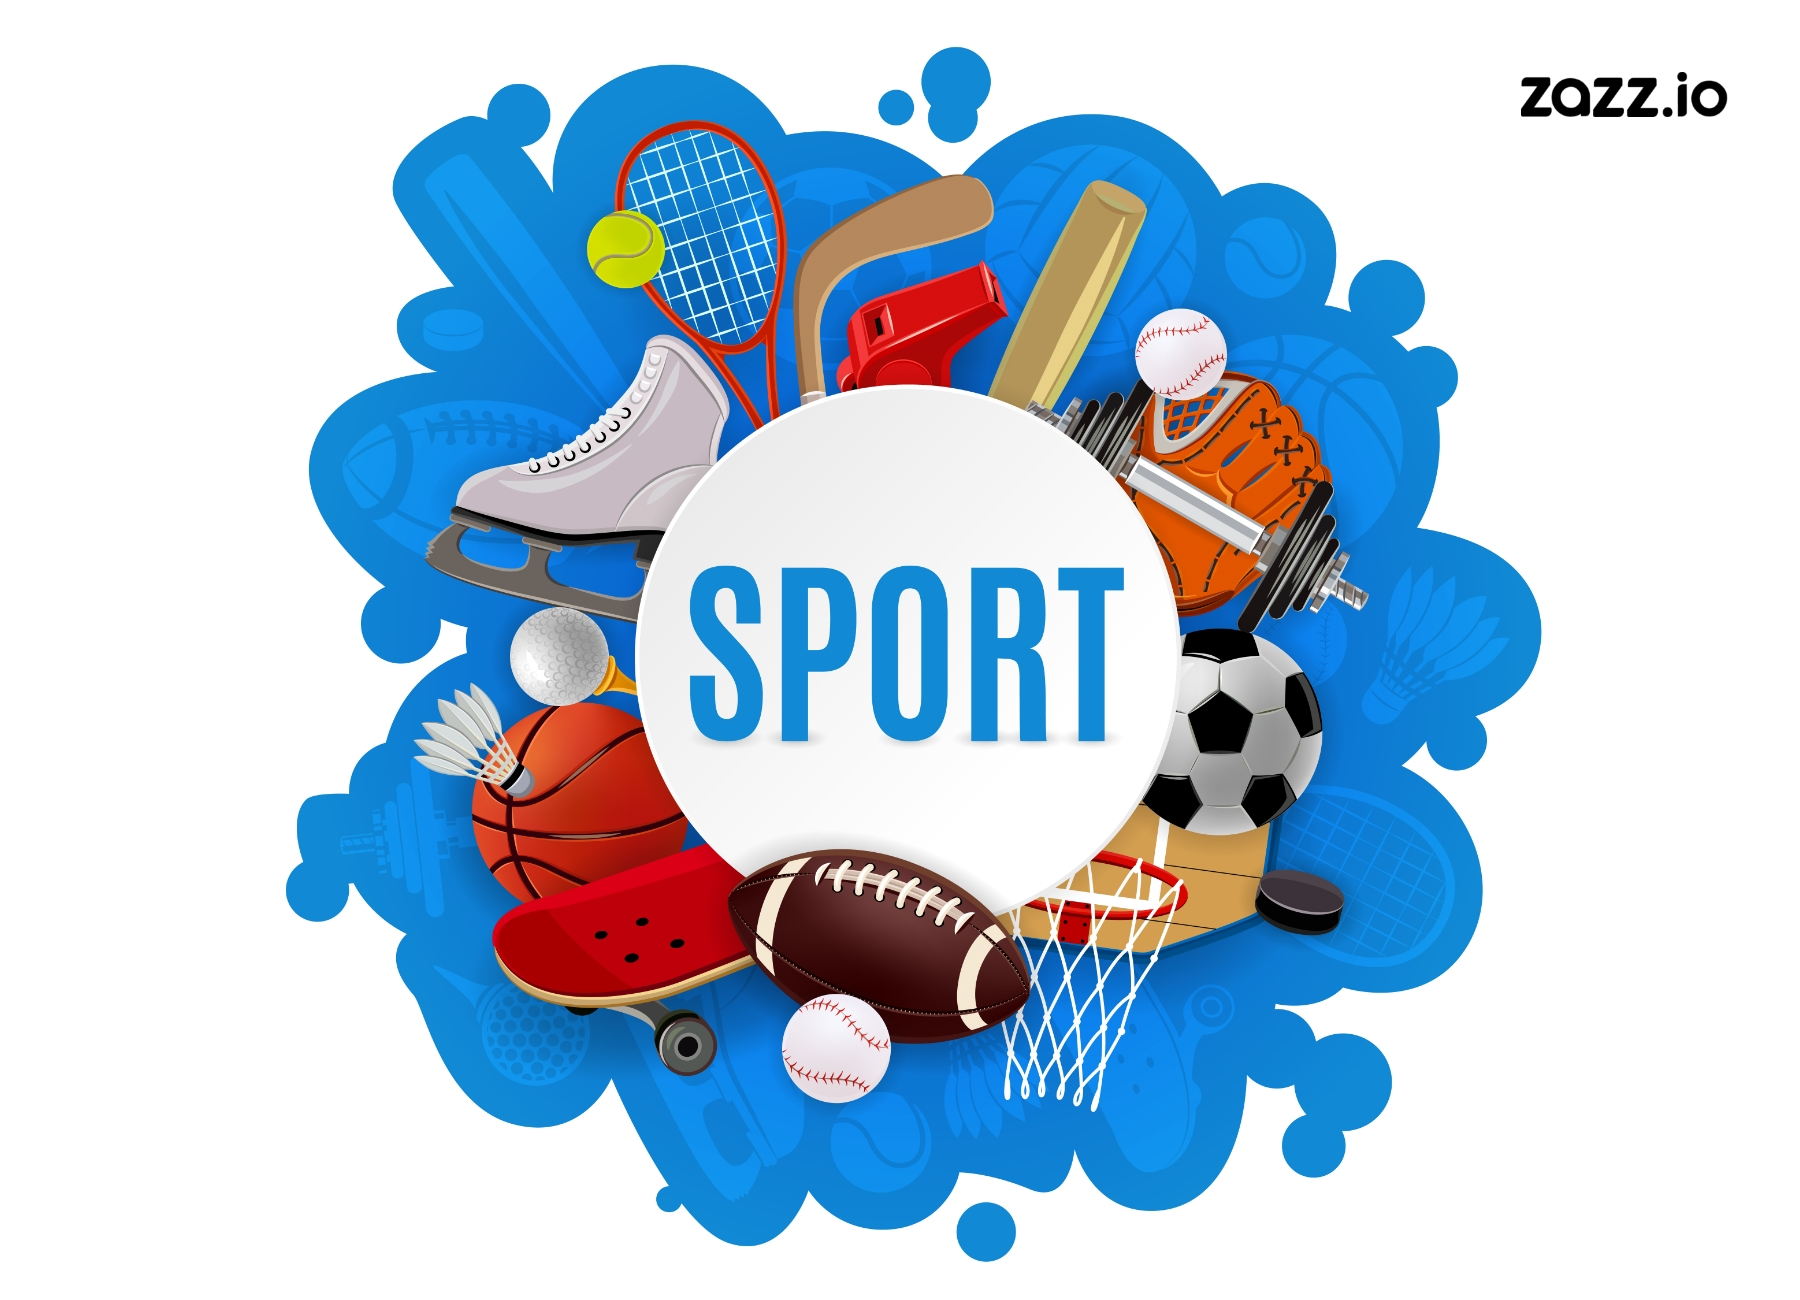 Investing in E-Sports